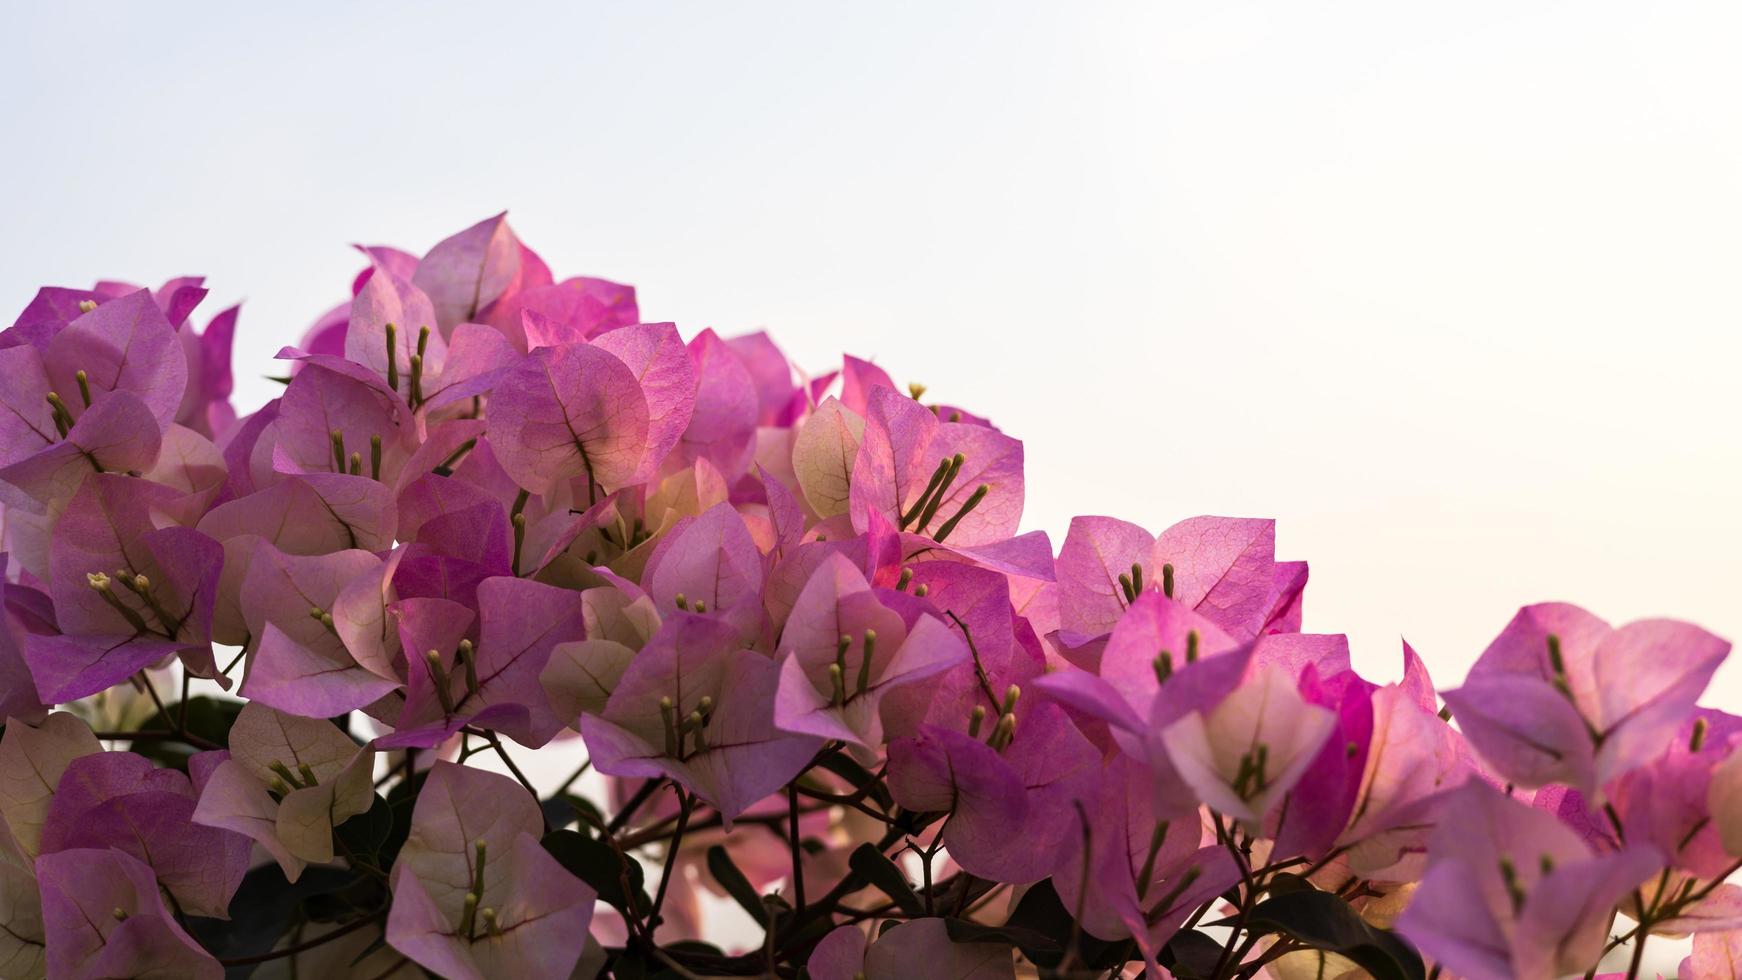 una vista de primer plano de un ramo de buganvillas de color rosa púrpura que florece maravillosamente. foto